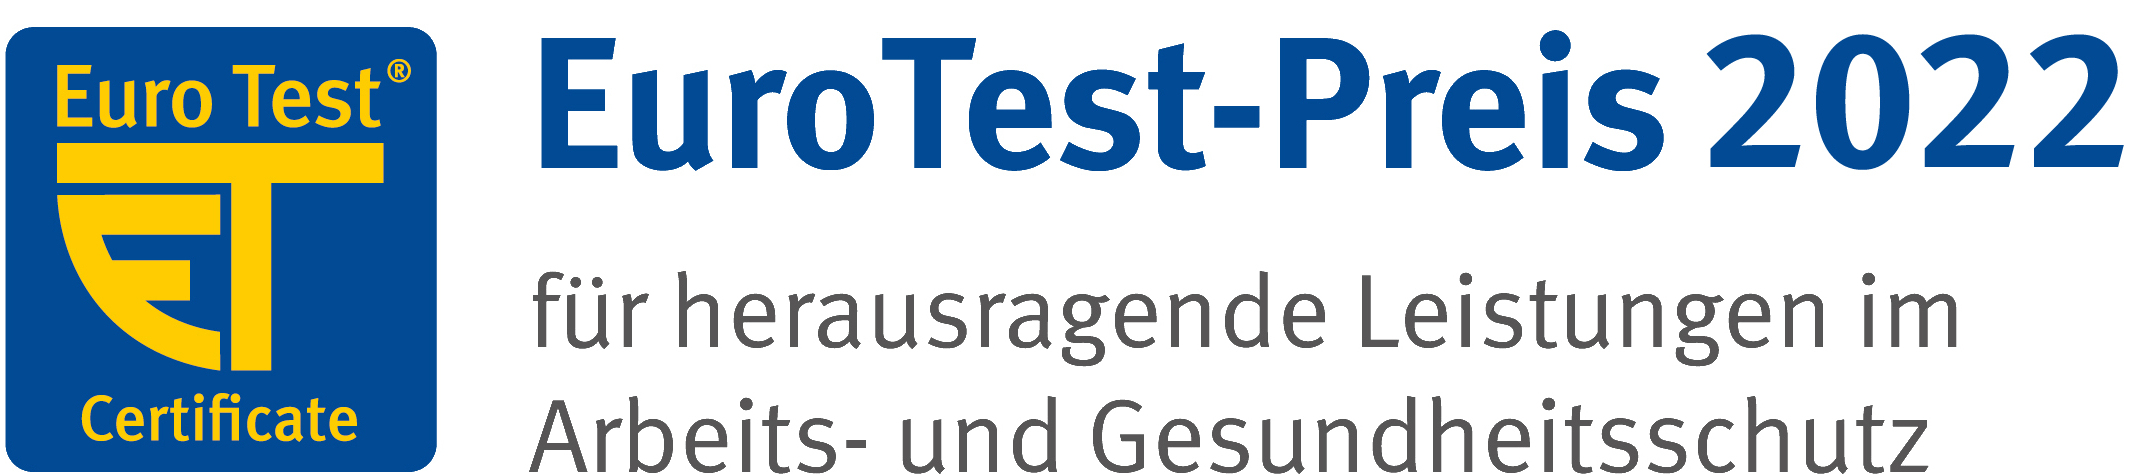 Logo Euro Test, Eurotest-Preis 2022 für herausragende Leistungen im Arbeitsschutz und Gesundheitsschutz